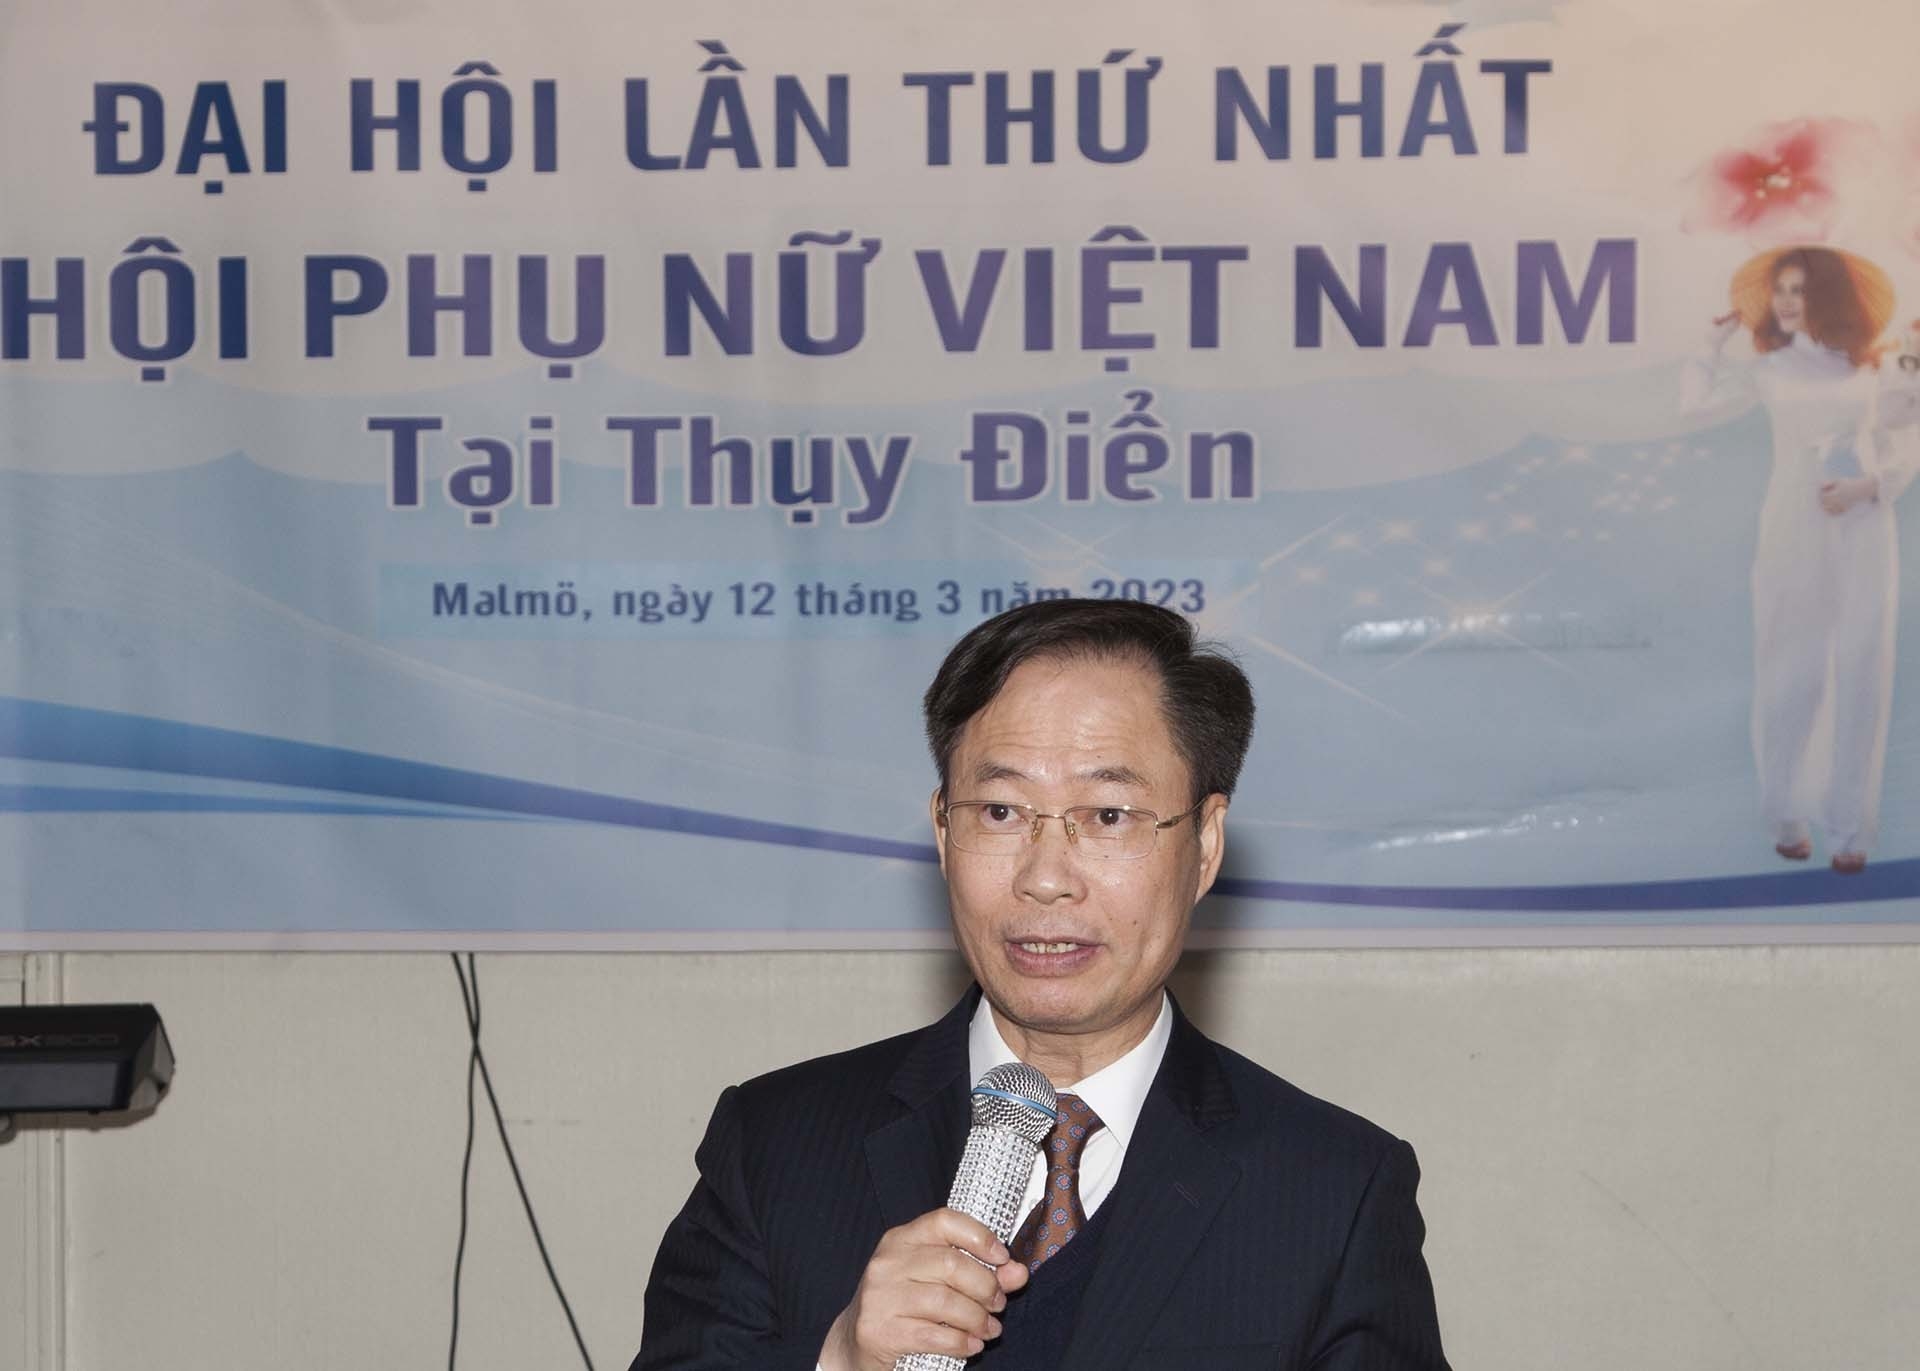 越南驻瑞典大使潘登当在会上发表讲话。